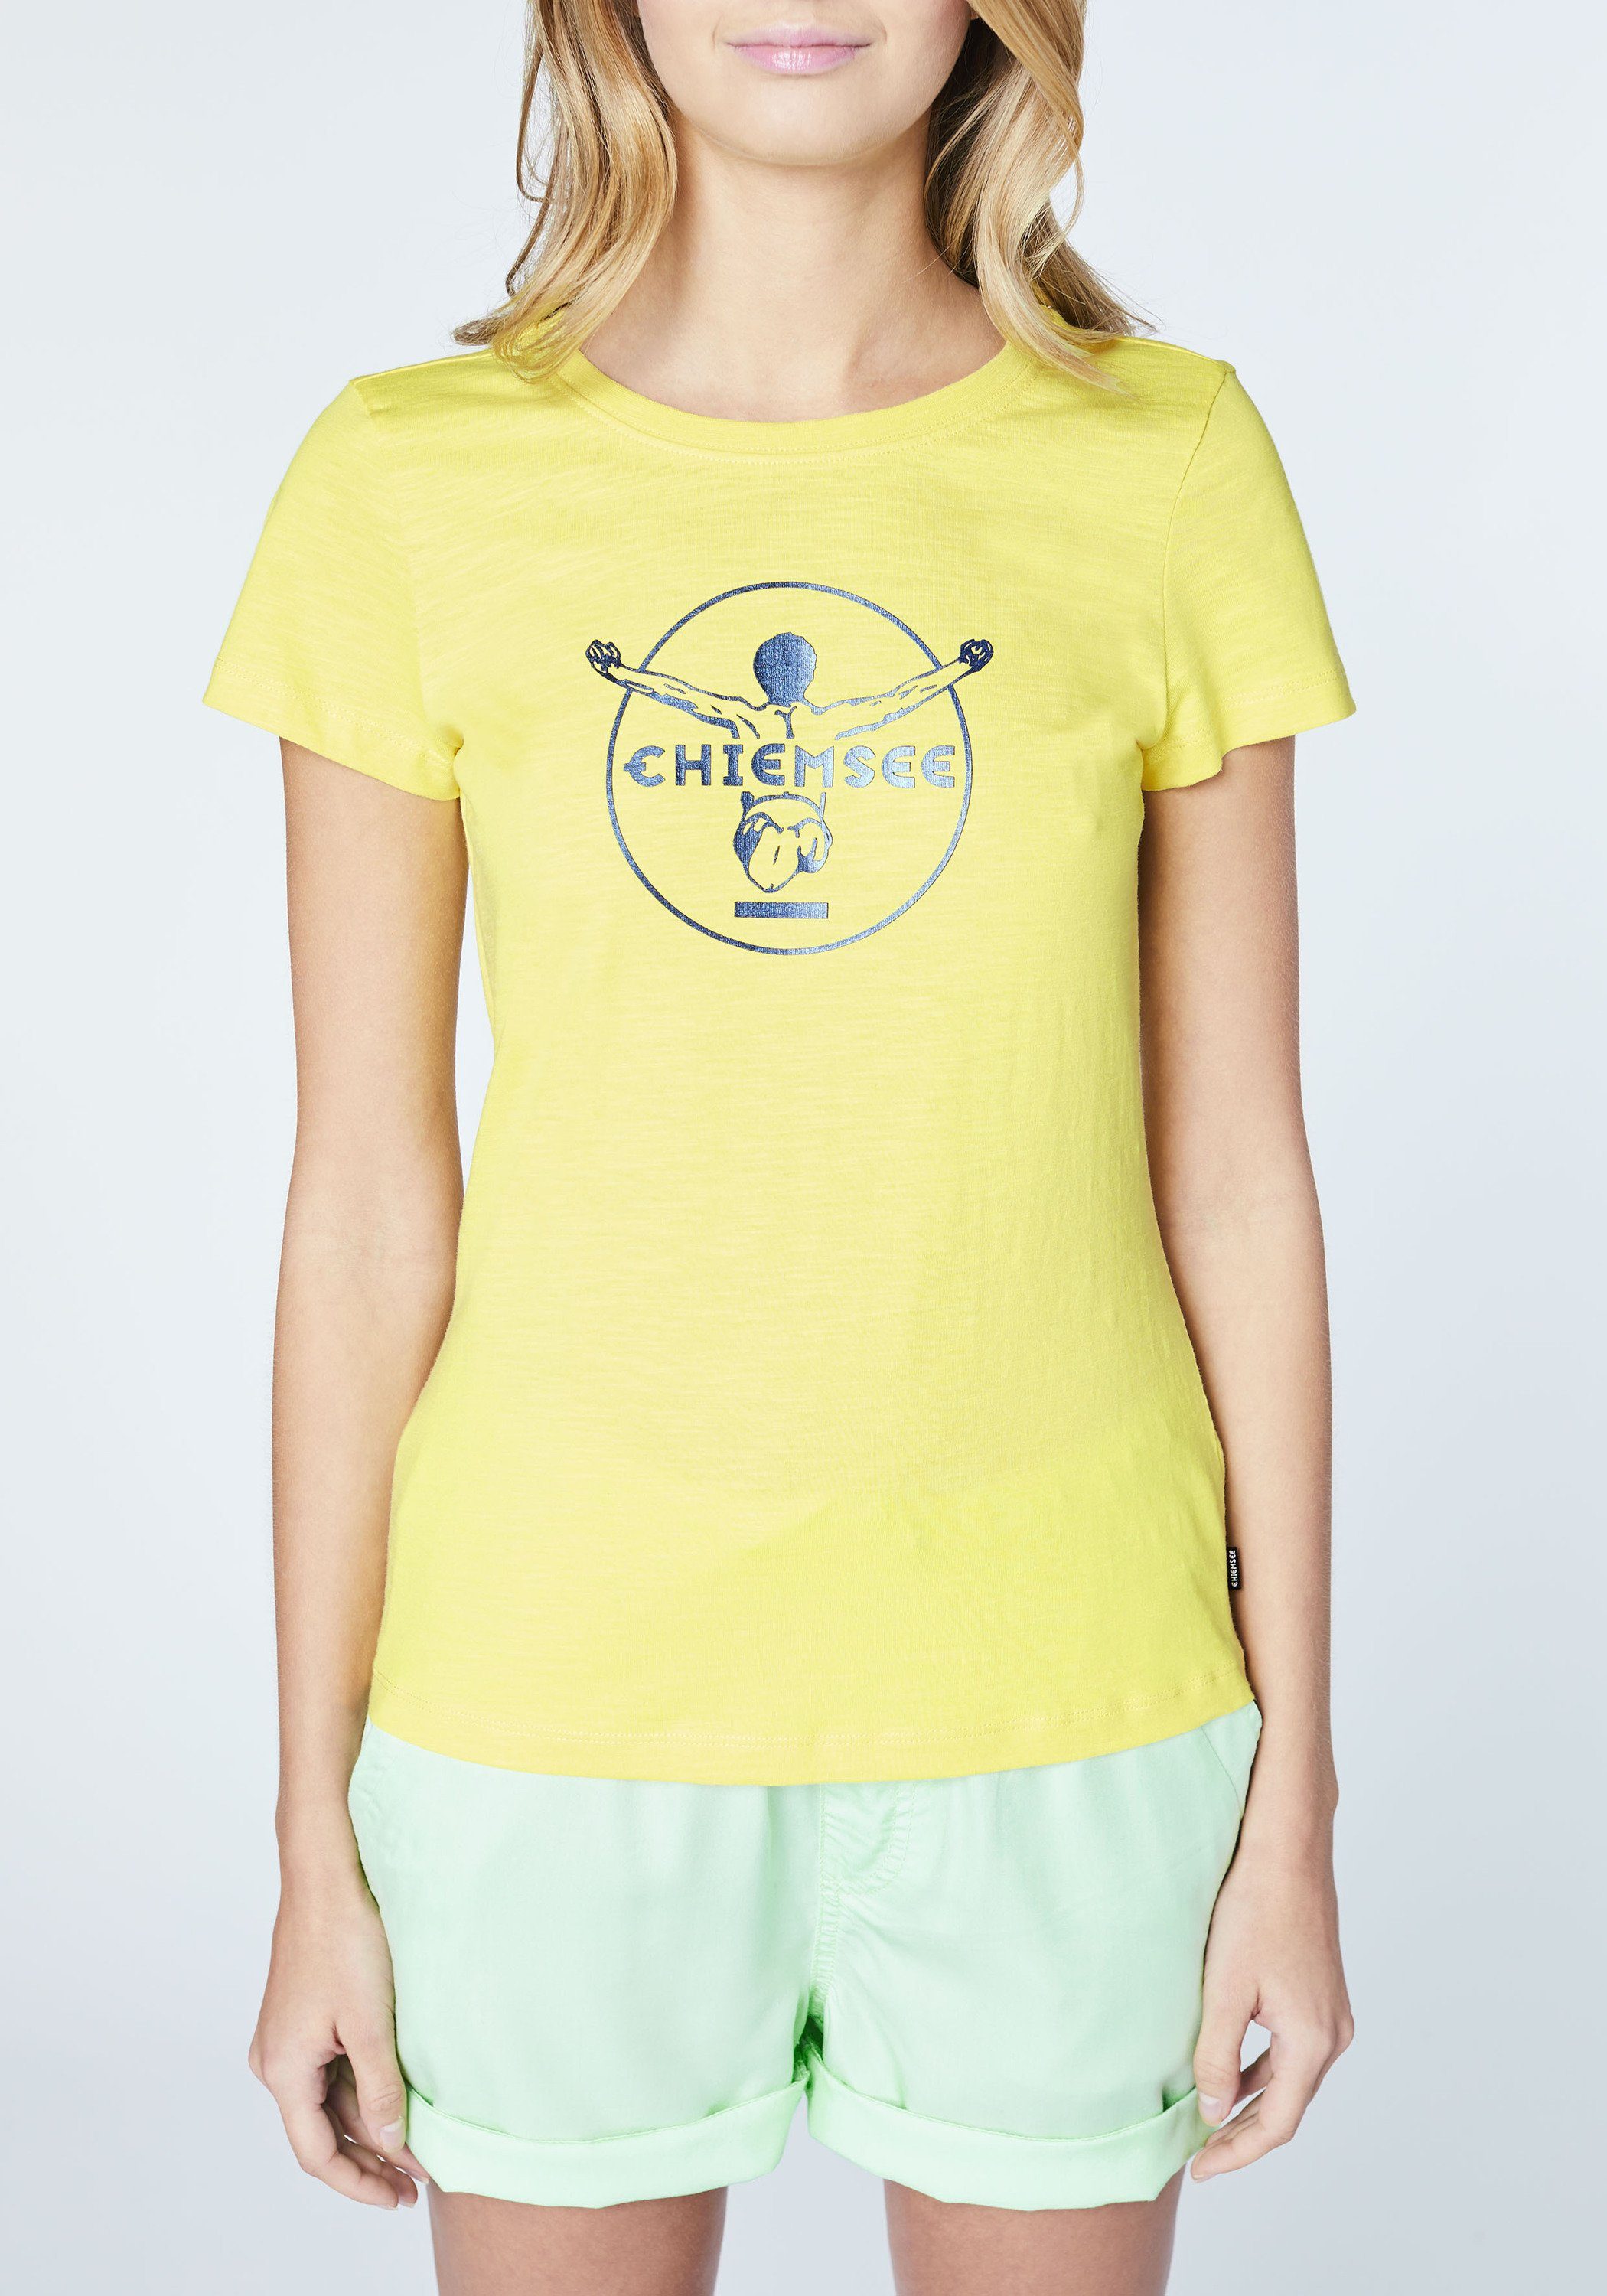 Chiemsee Print-Shirt T-Shirt mit 1 Limelight Jumper-Frontprint